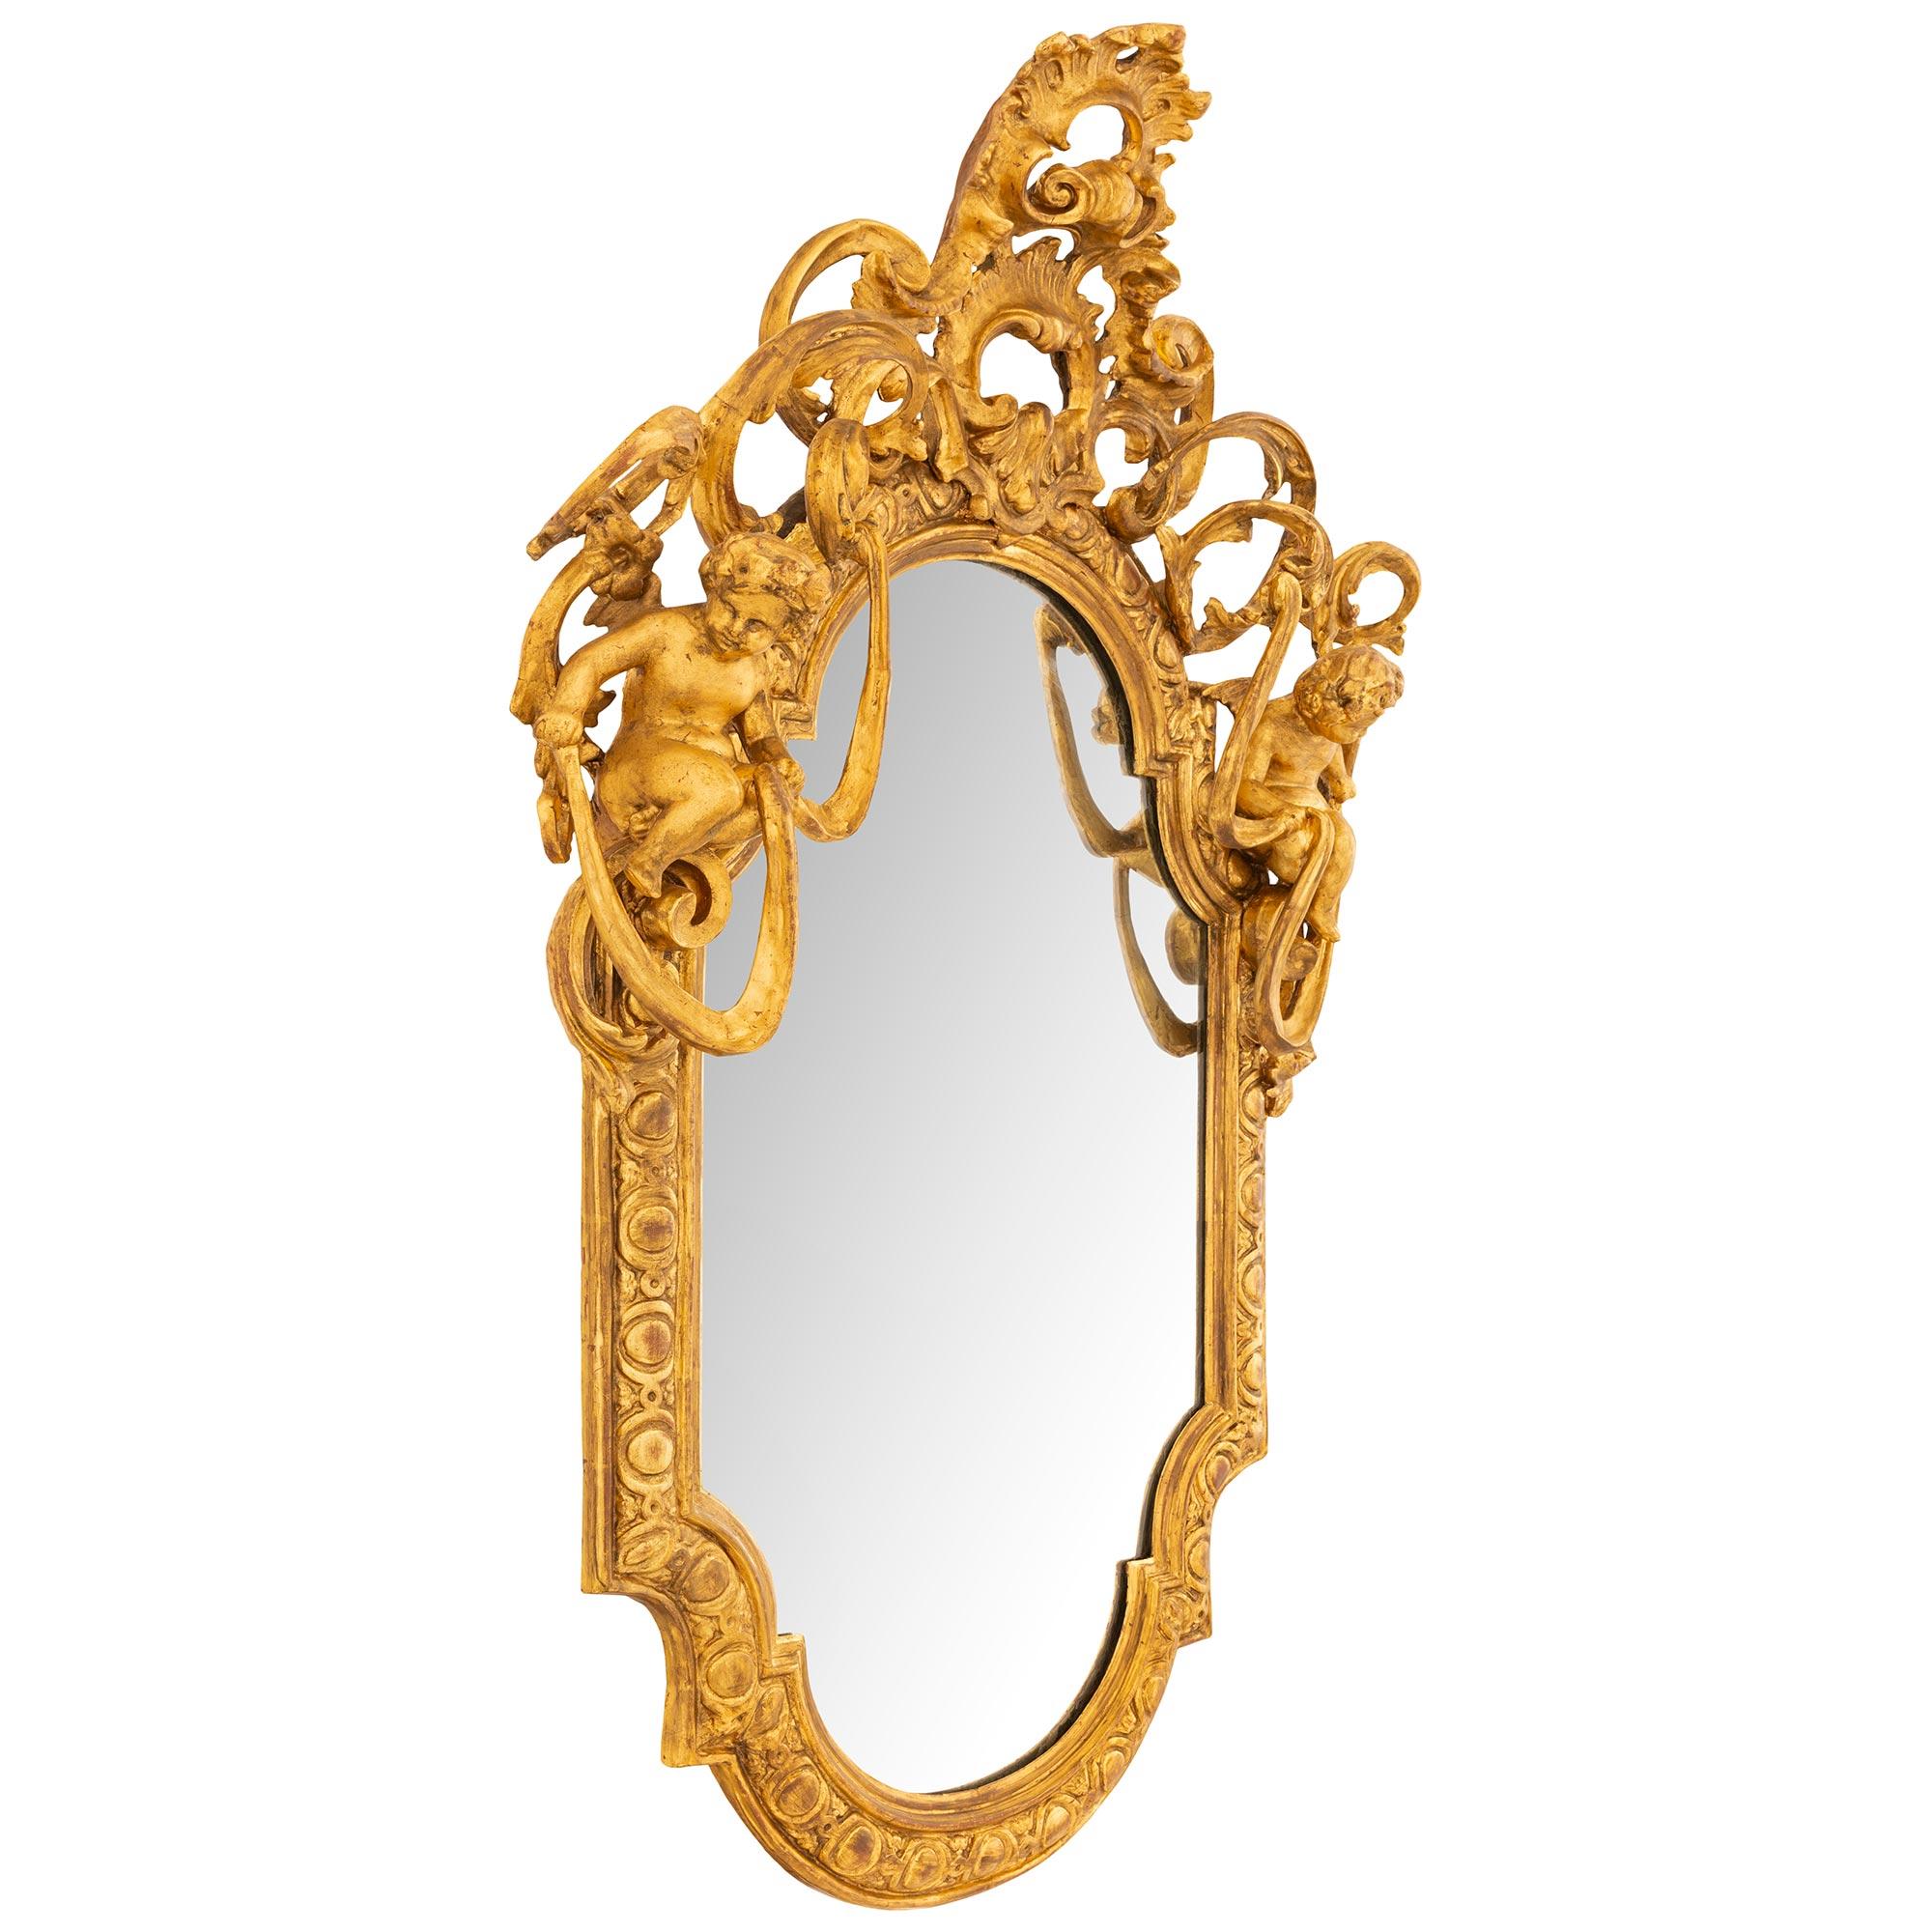 Miroir en bois doré italien du XVIIIe siècle de très grande qualité et d'une grande élégance. Le cadre à cabochon, très attrayant et richement sculpté, présente une coquille centrale supérieure au milieu d'un motif de feuilles d'acanthe à volutes